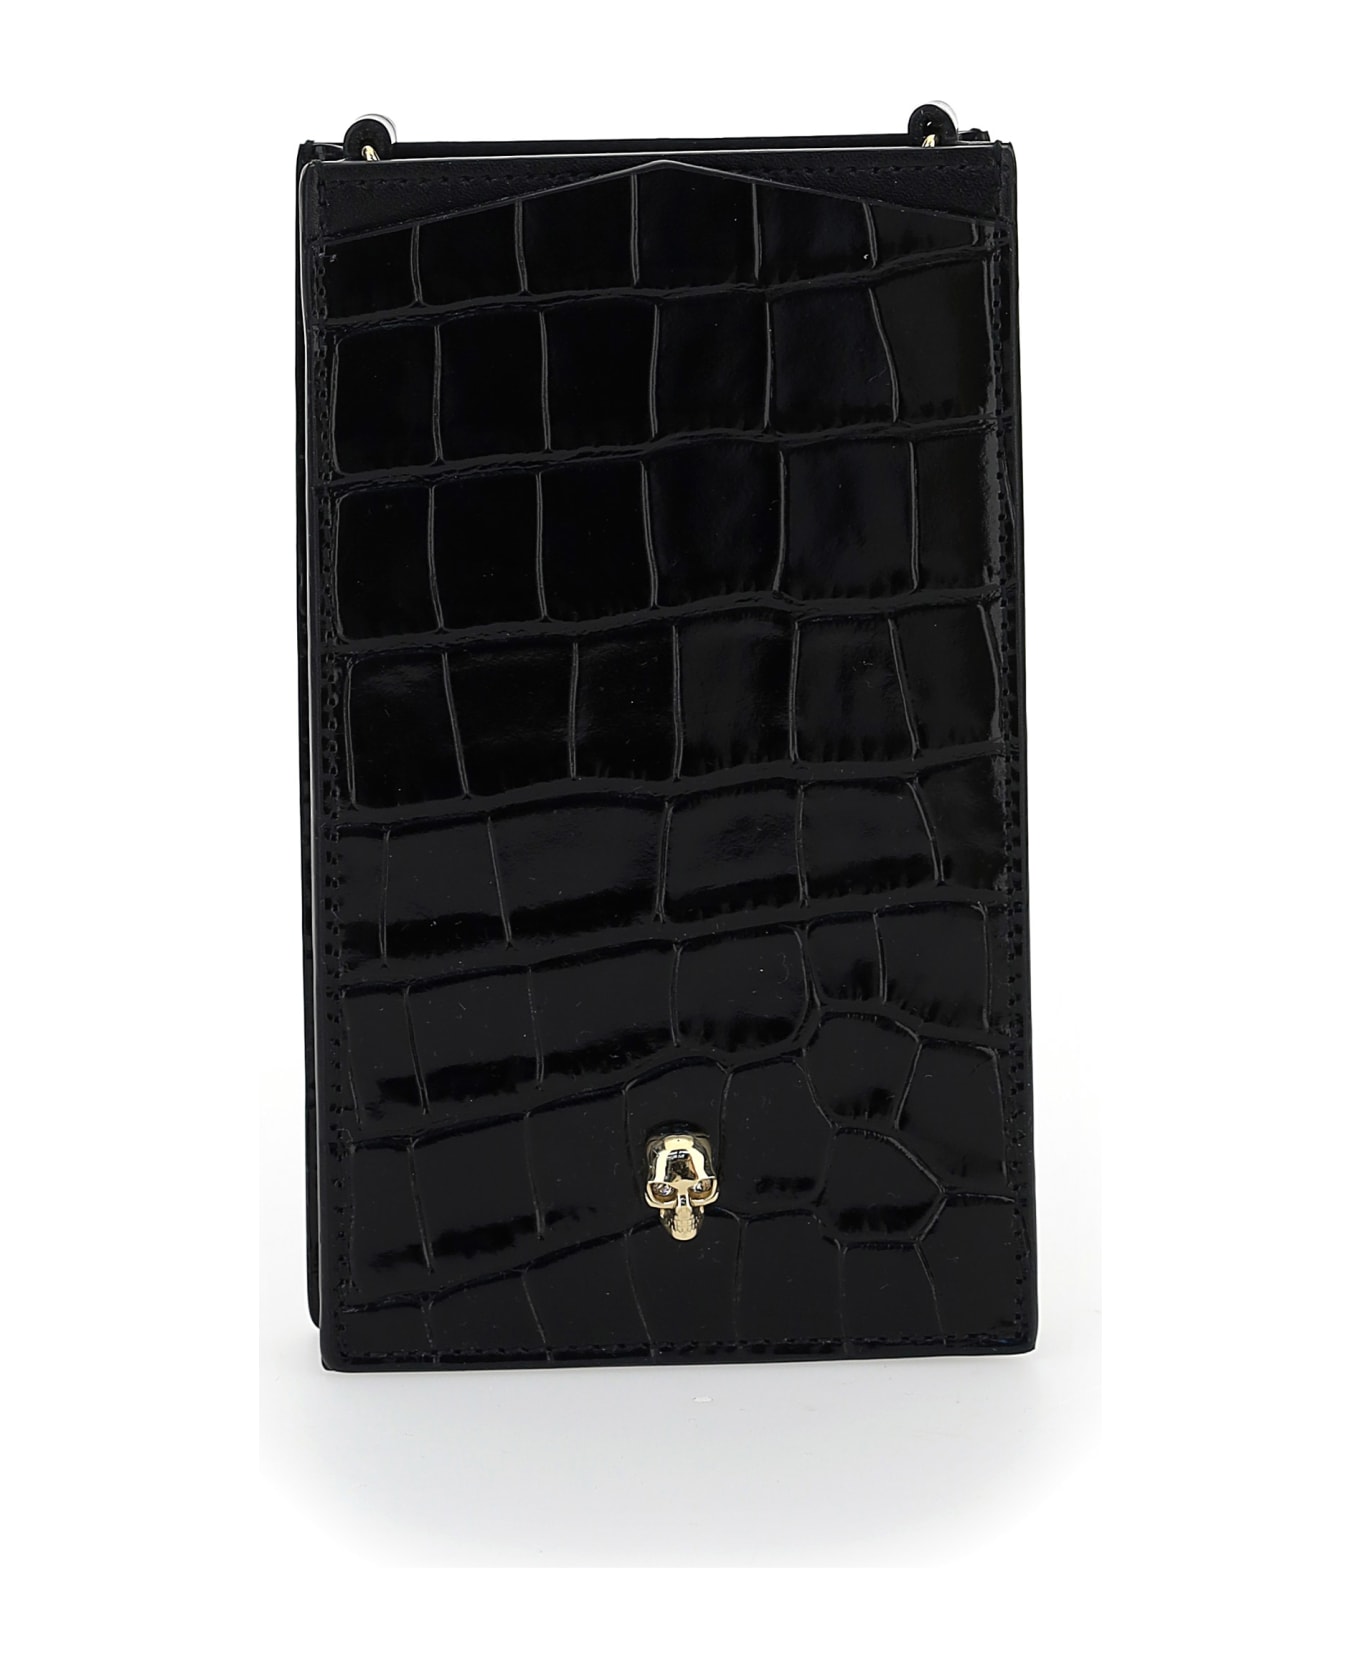 Alexander McQueen Phone Case - Black